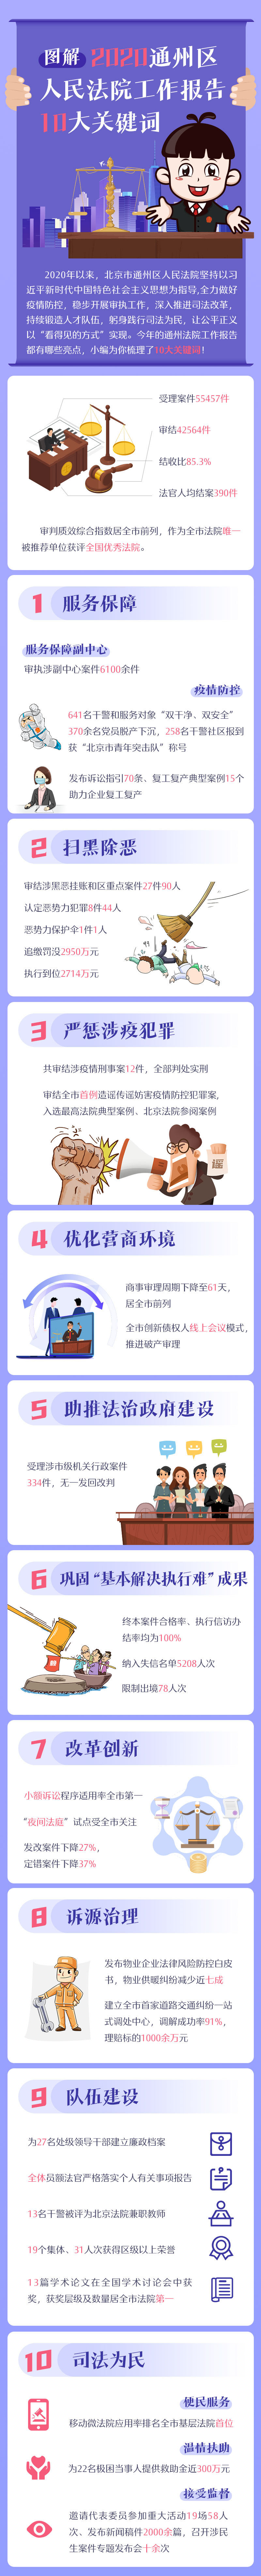 【图解】北京通州区人民法院工作报告中的10大关键词